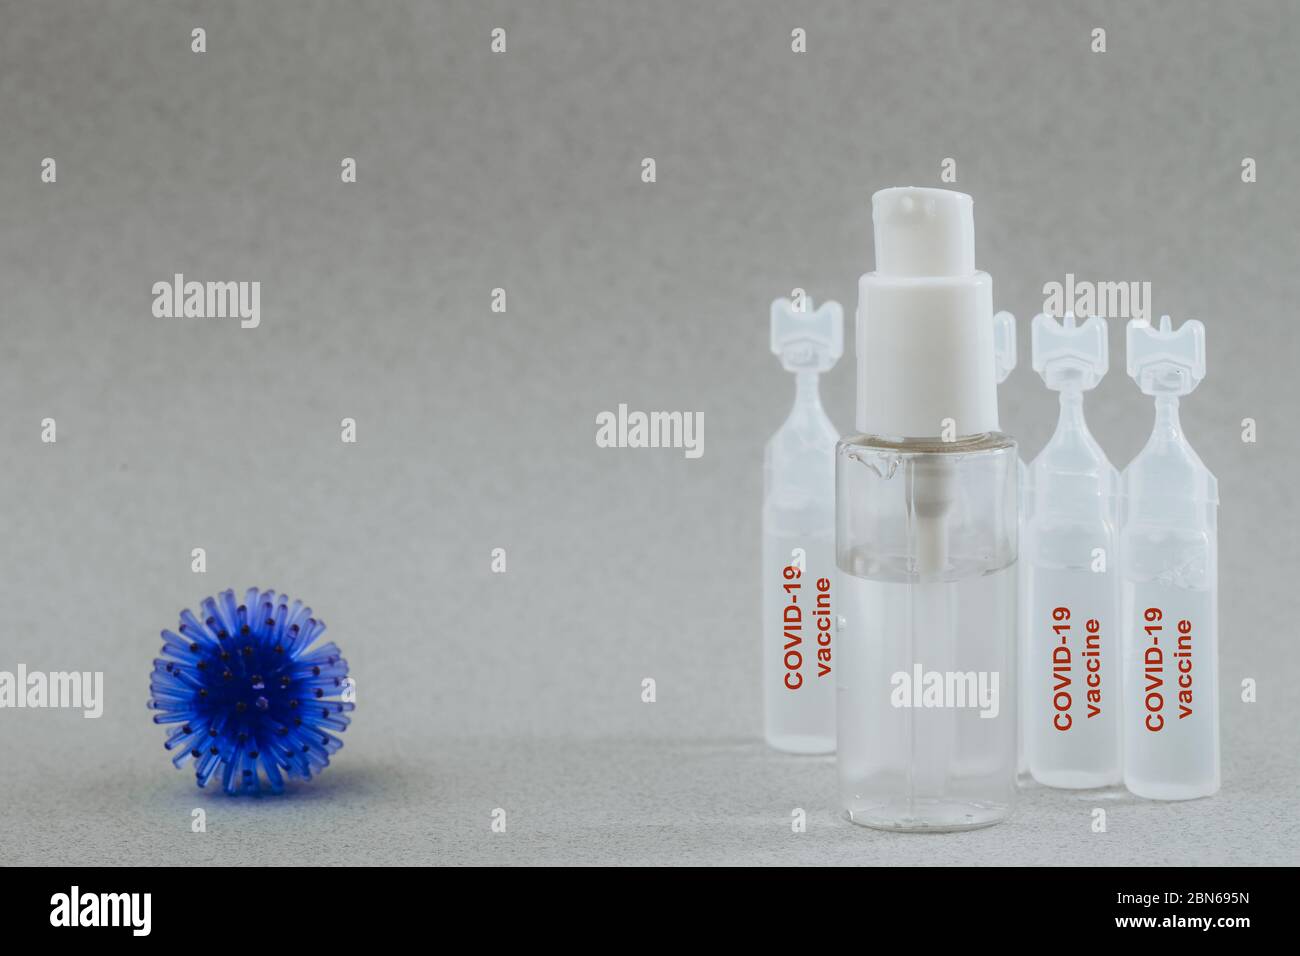 Modèle abstrait du coronavirus, ampoule avec médicament et flacon avec gel antibactérien pour les mains sur fond gris. L'ampoule indique Covid-19. Risque de pandémie Banque D'Images